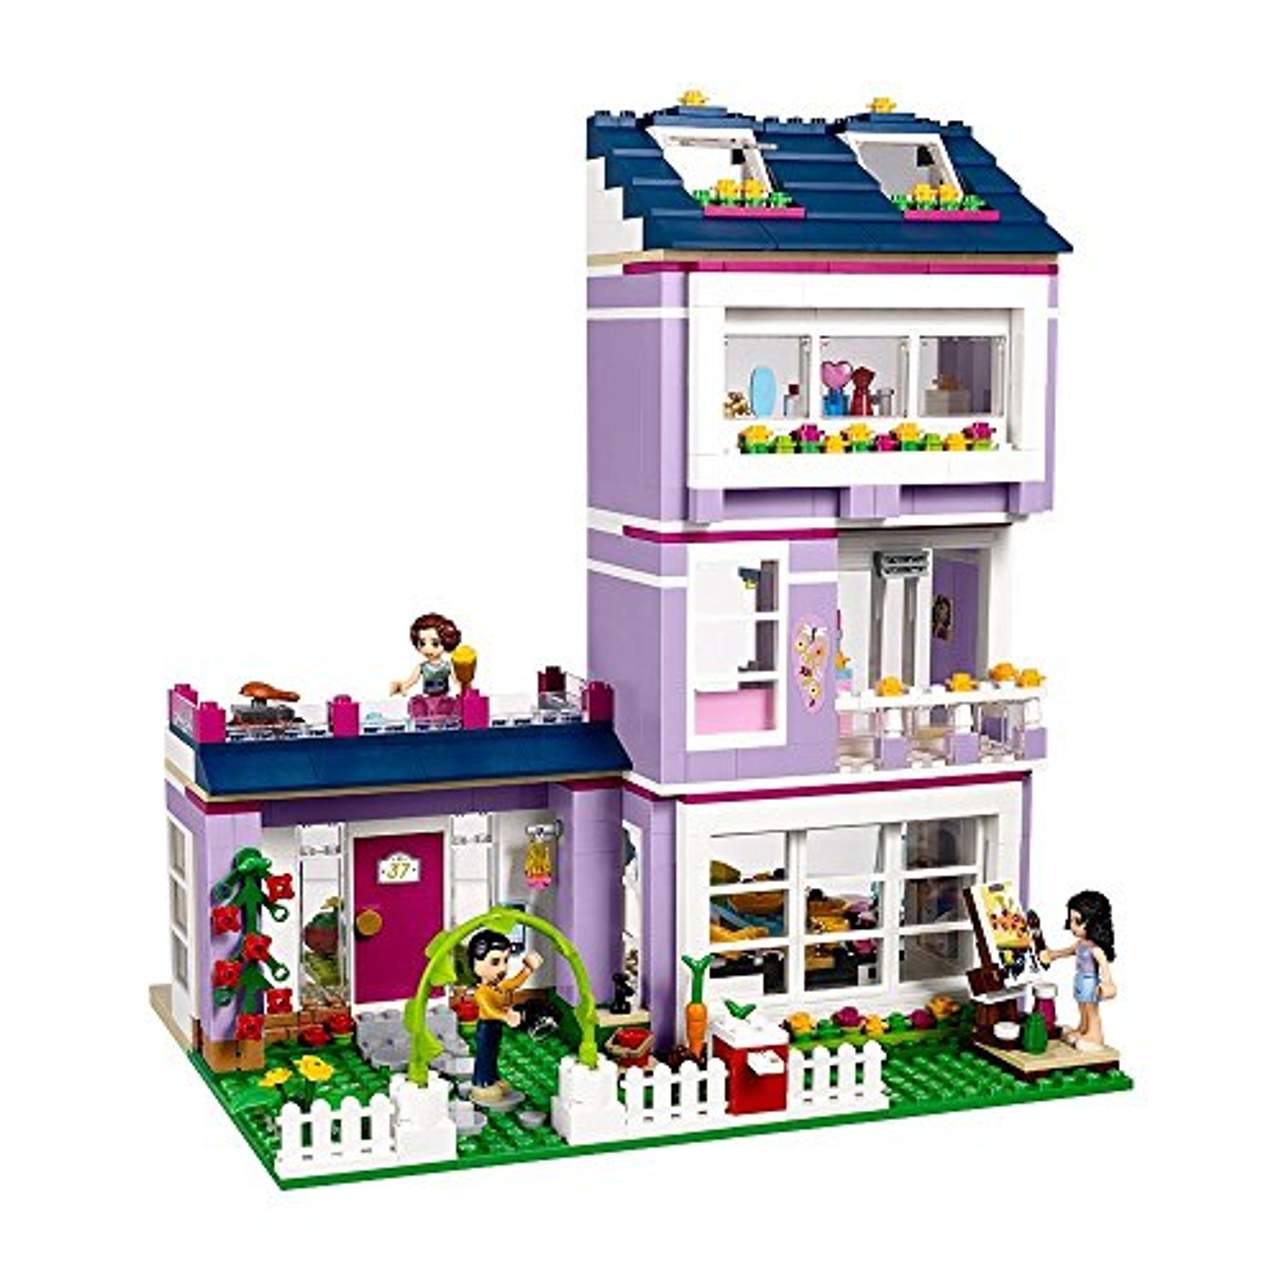 LEGO Friends 41095 Emma's Familienhaus